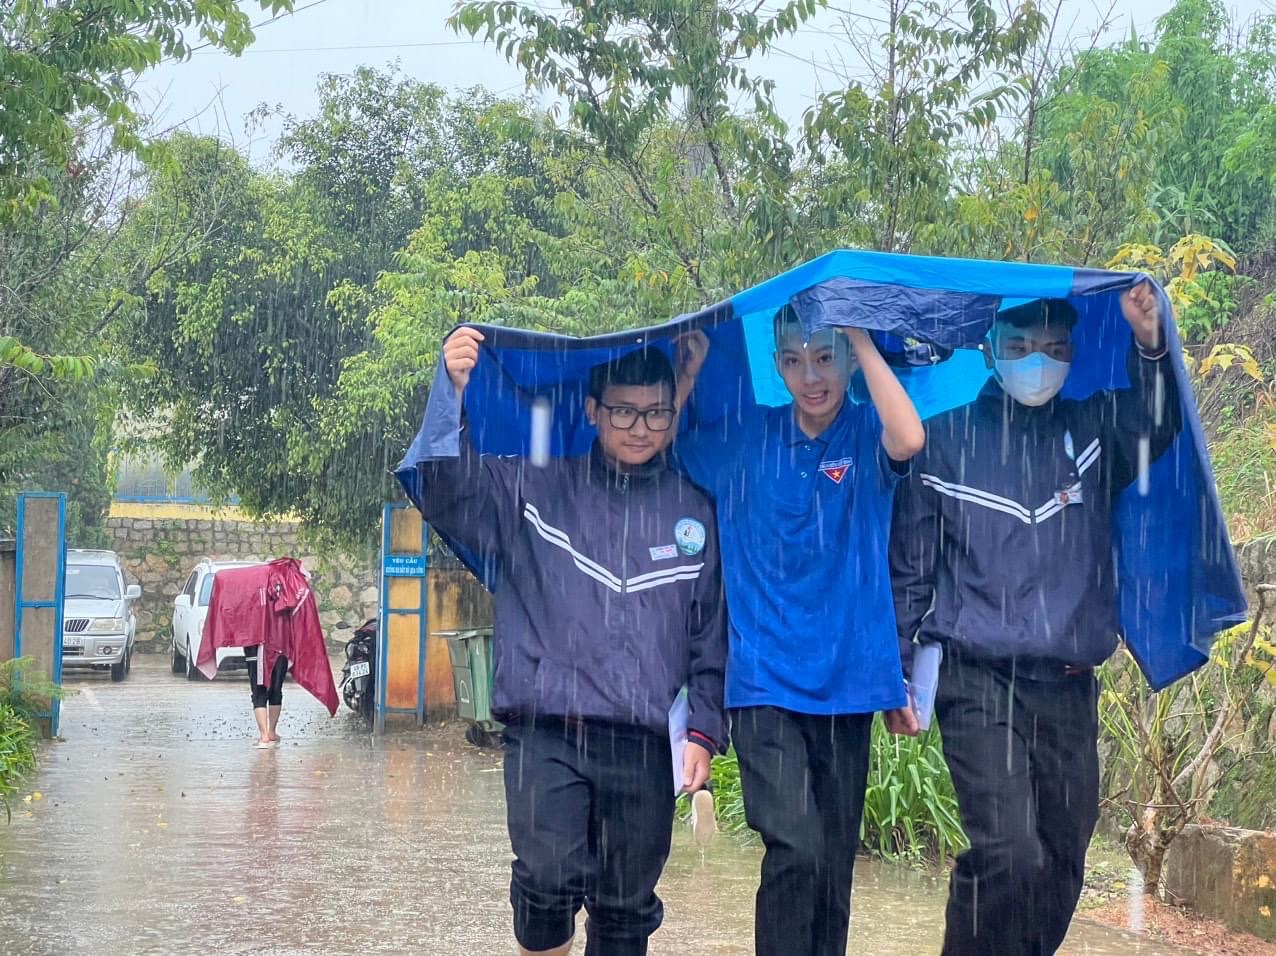 Đội hình tiếp sức mùa thi hỗ trợ thí sinh đến làm thủ tục dự thi chiều 26/6 trong cơn mưa tầm tã